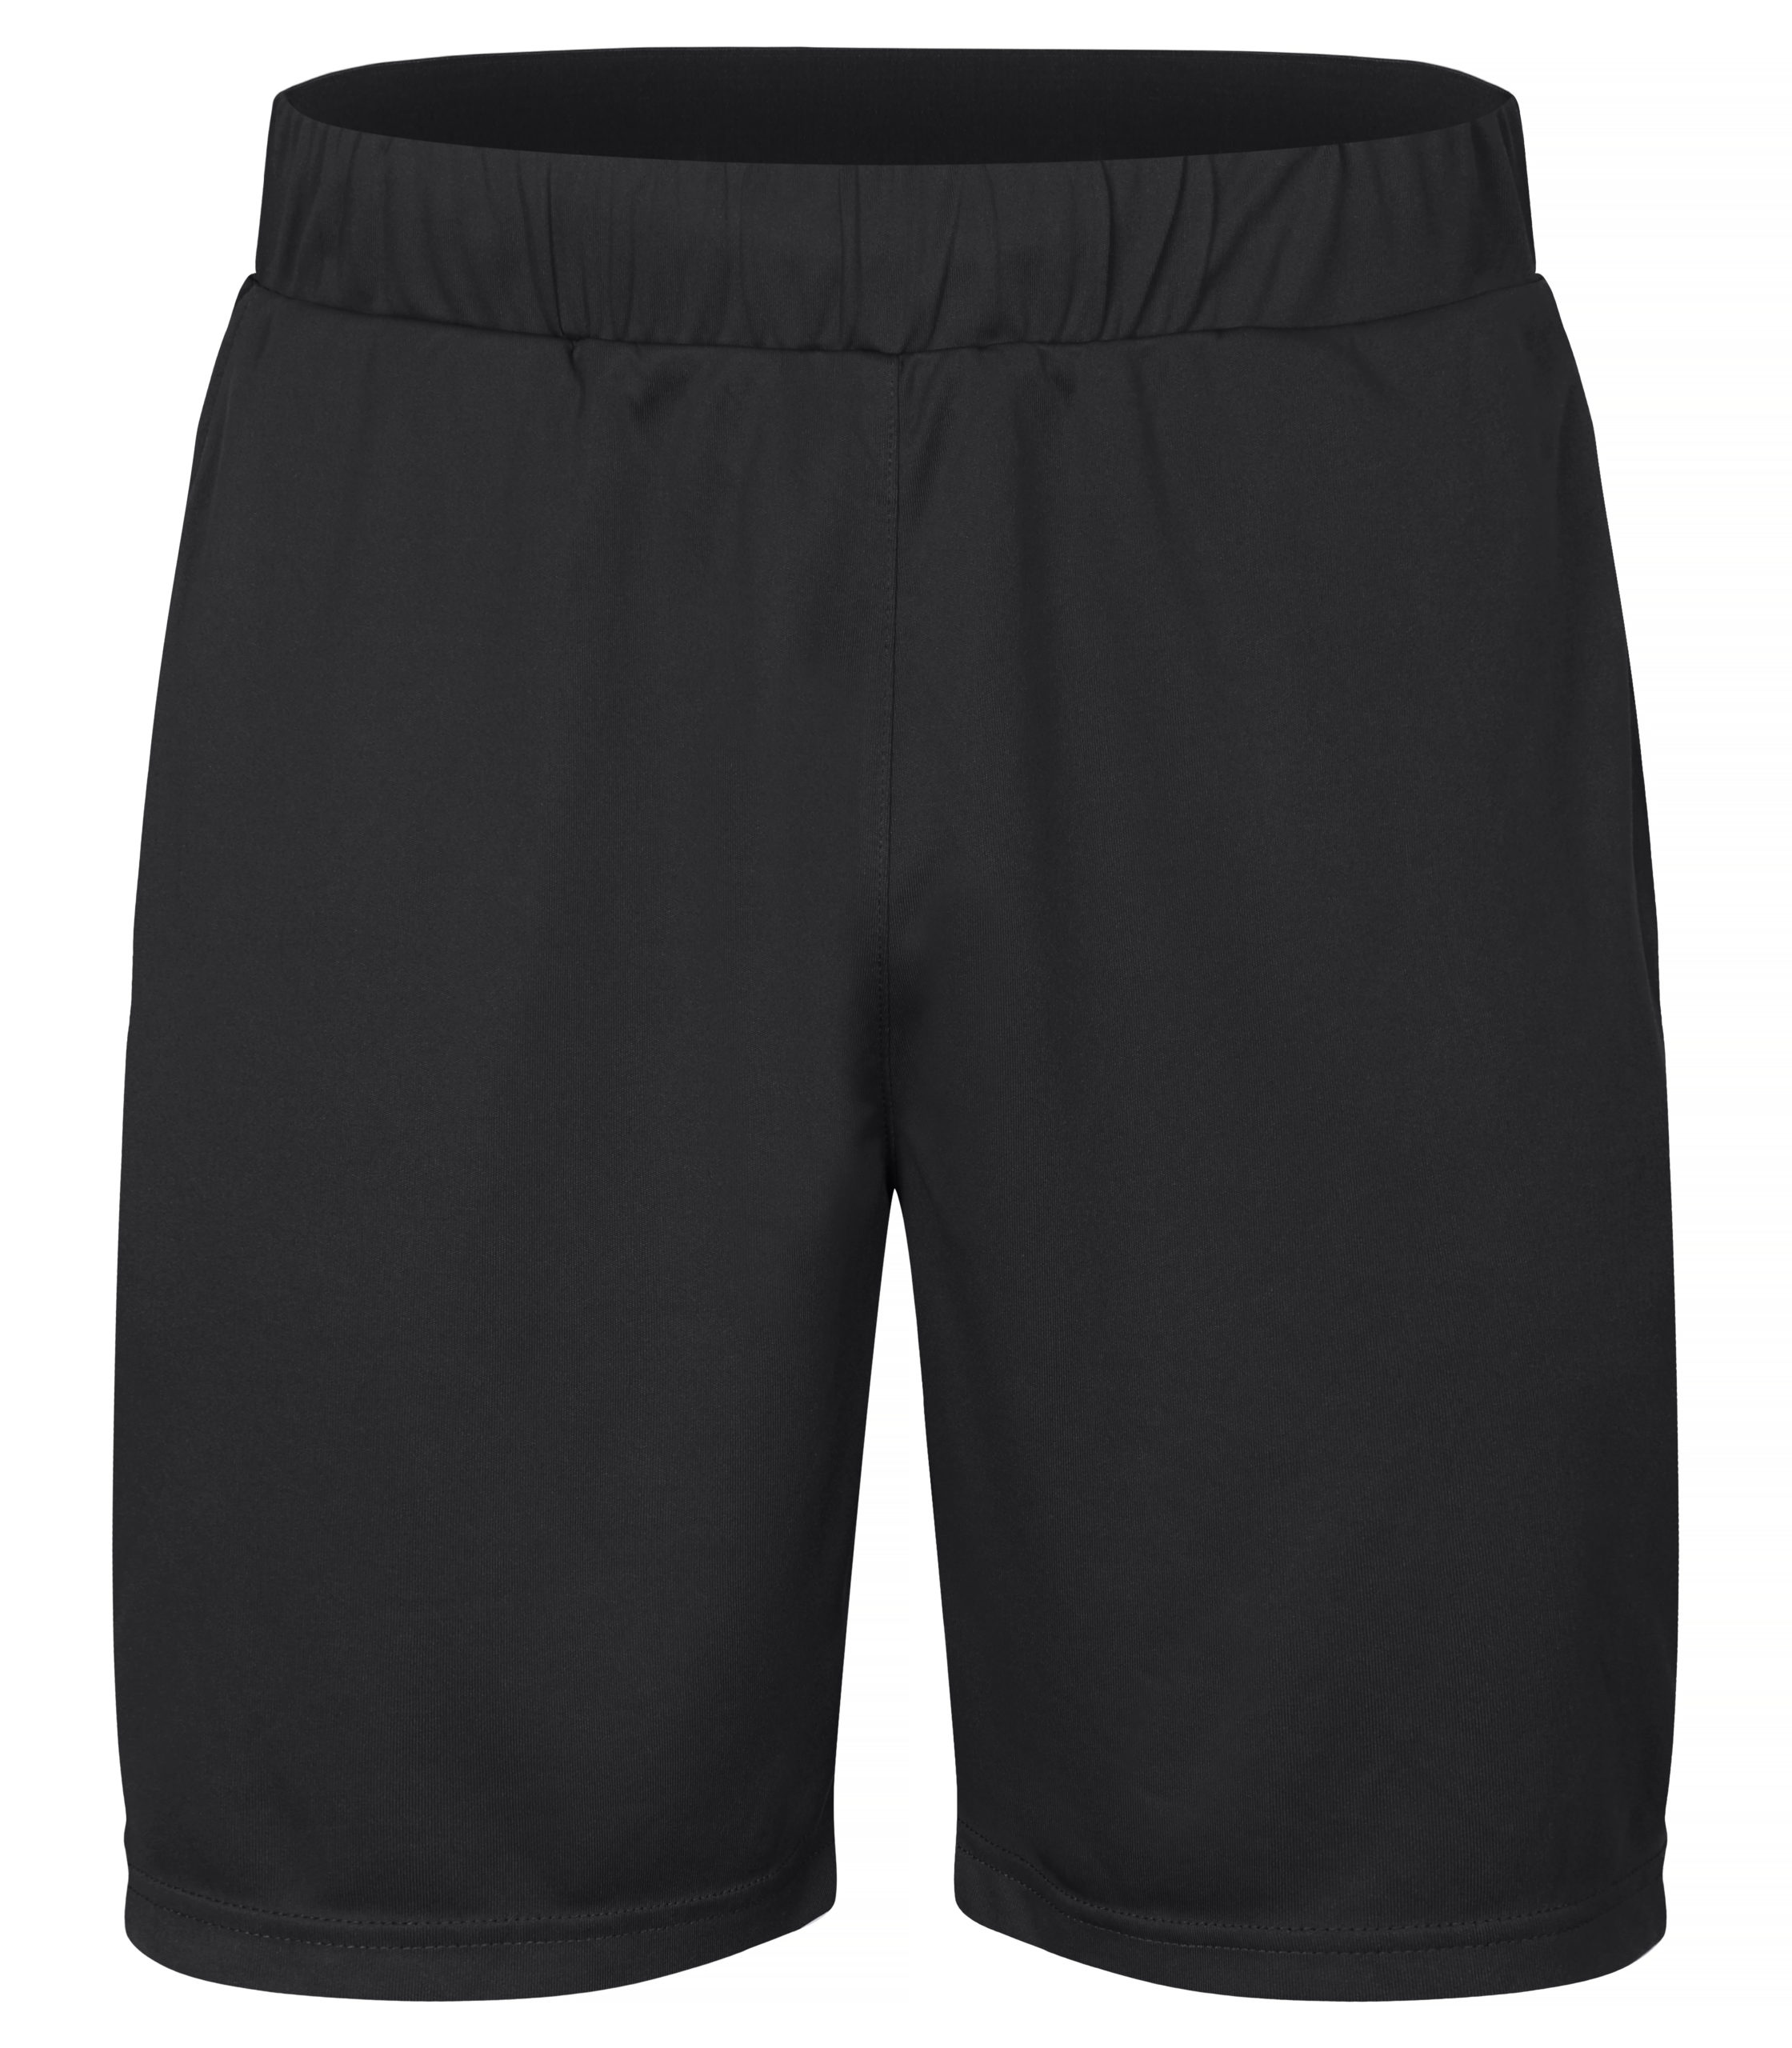 Clique Basic Active Shorts Black